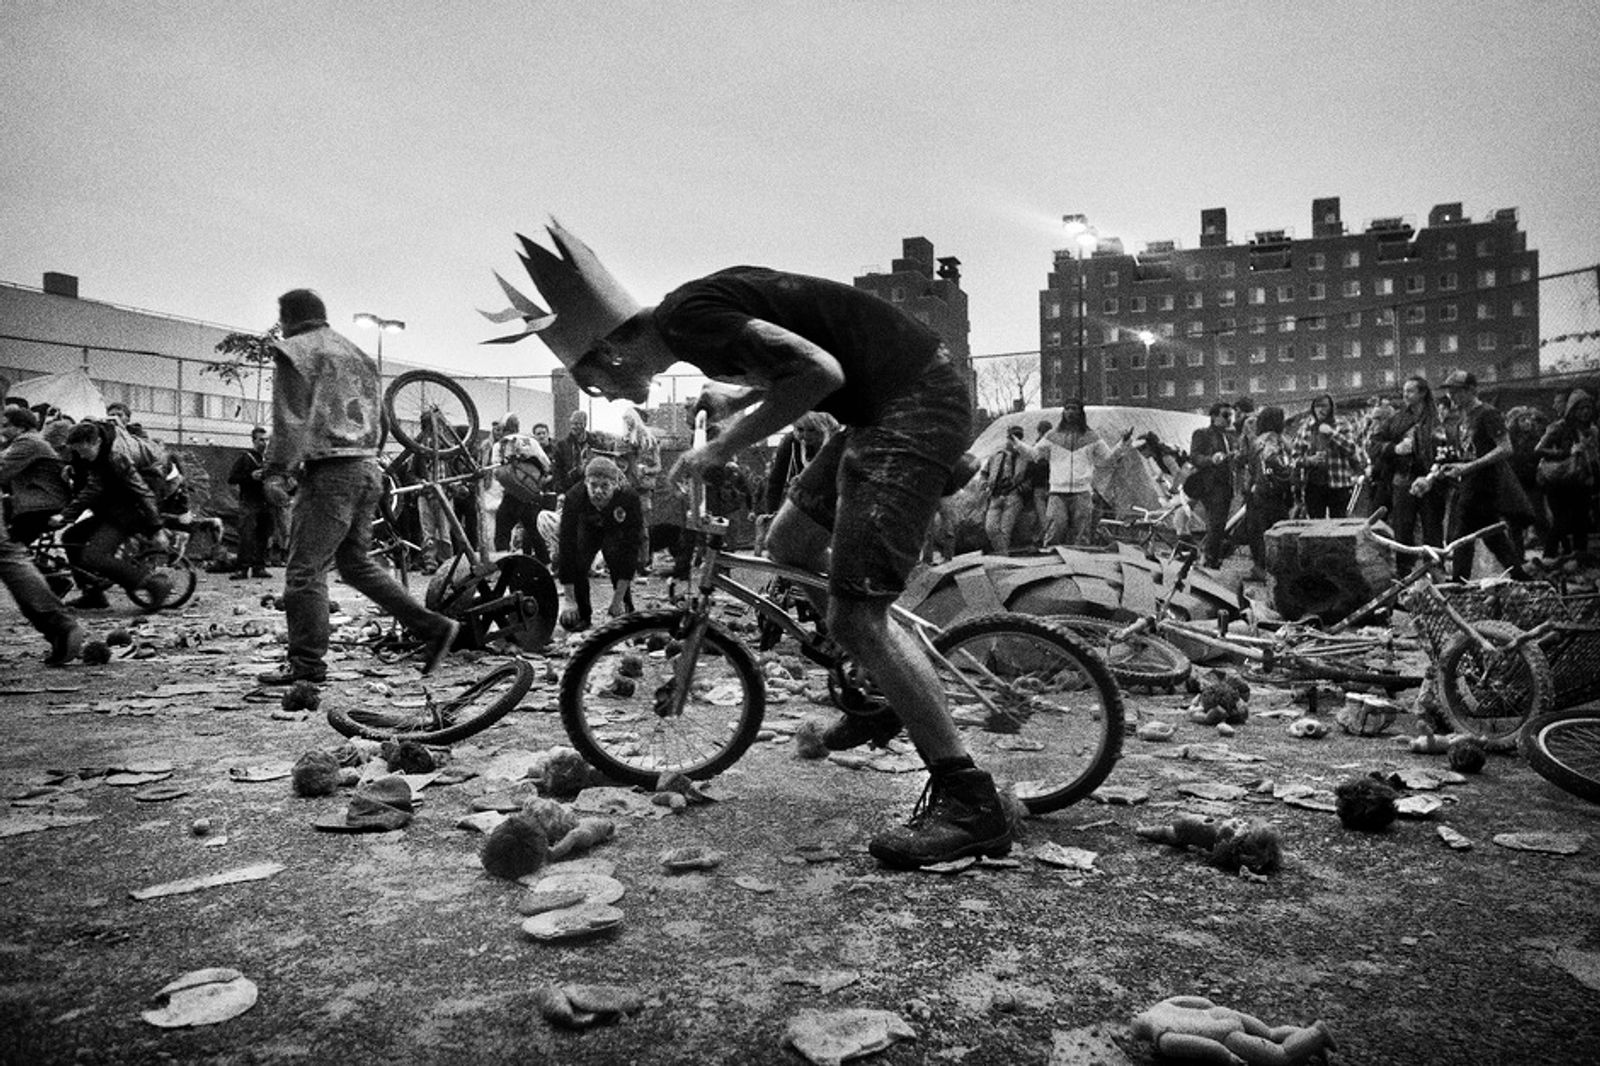 © Julie Glassberg - It is mayhem at the Bike Kill event, Brooklyn NY.